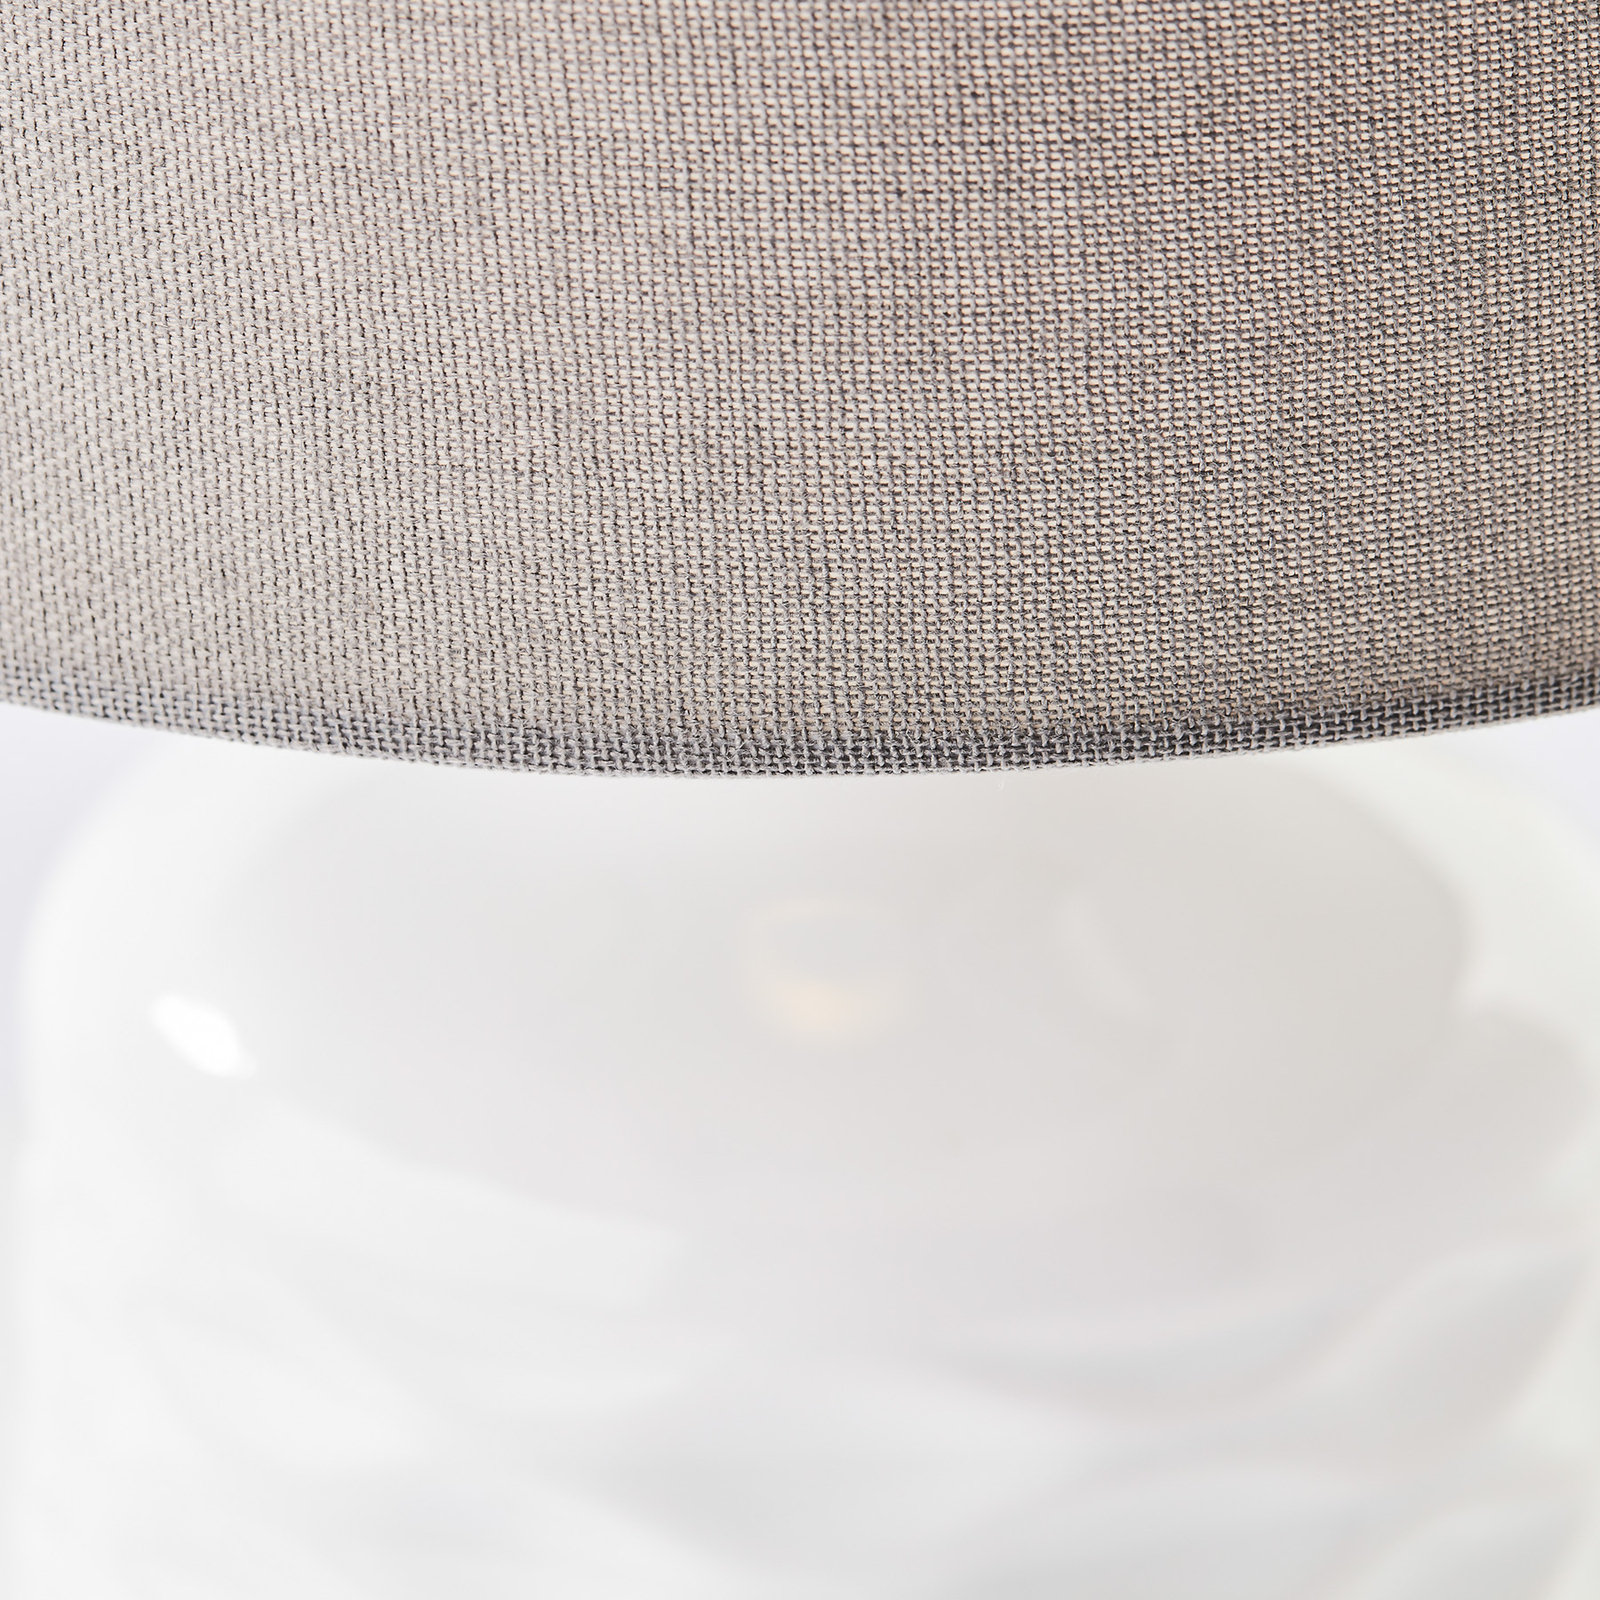 Stalo lempa "Ilysa", medžiaginis atspalvis pilkas keraminis pagrindas